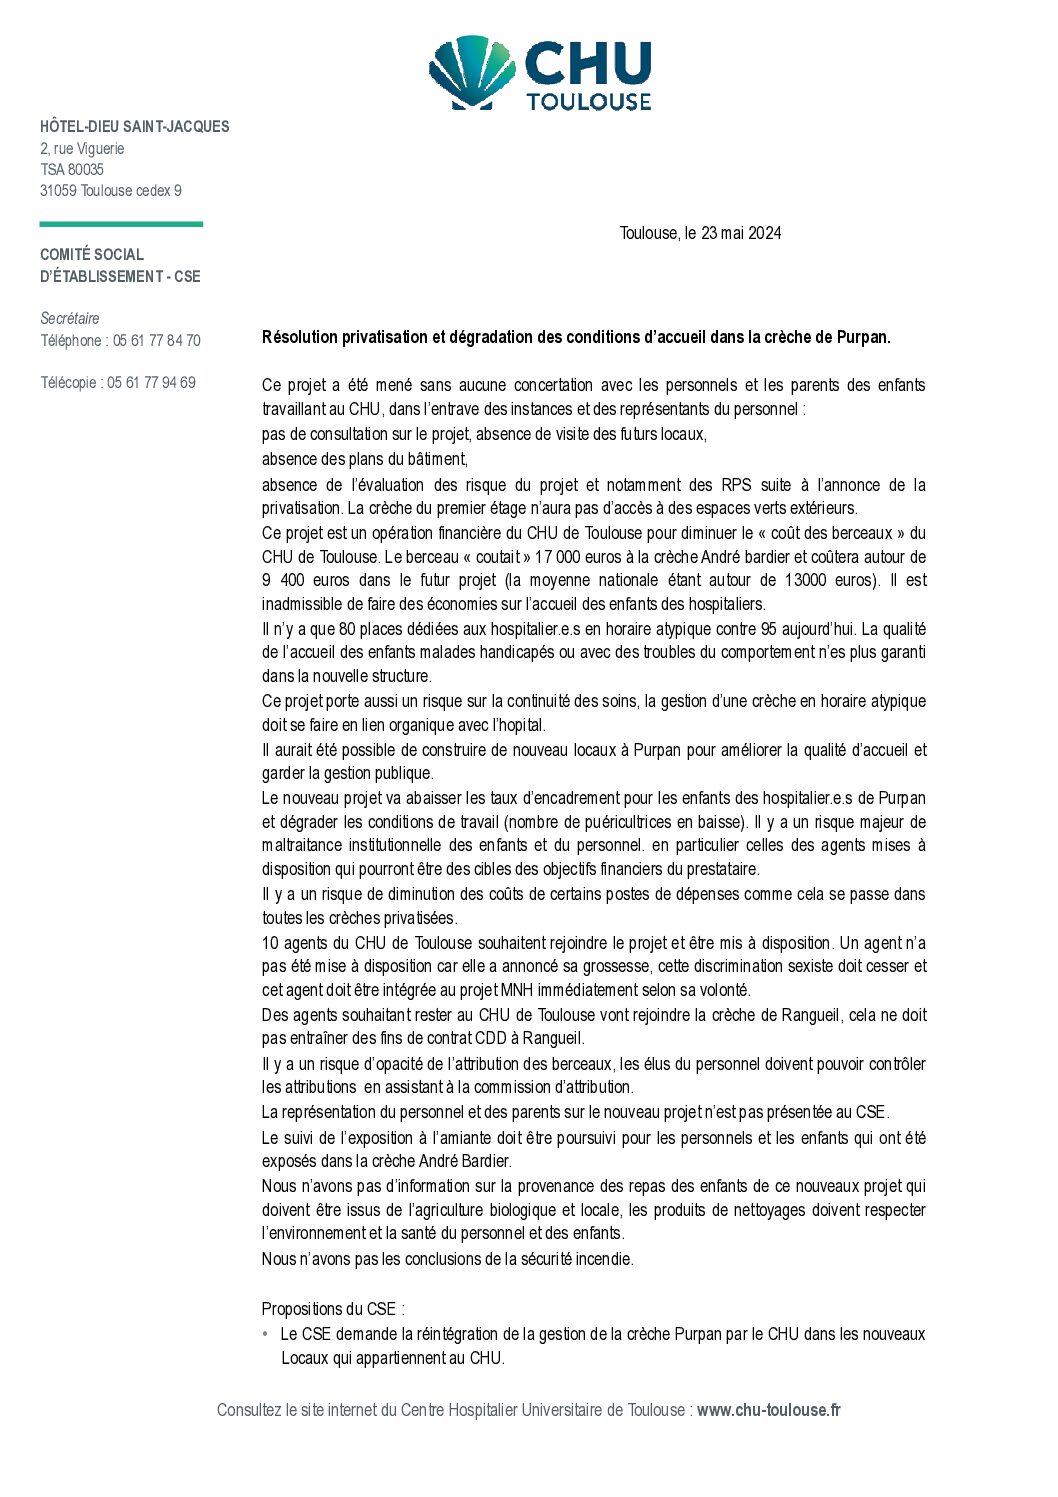 Le CSE du CHU de Toulouse se prononce contre la privatisation de la crèche de Purpan